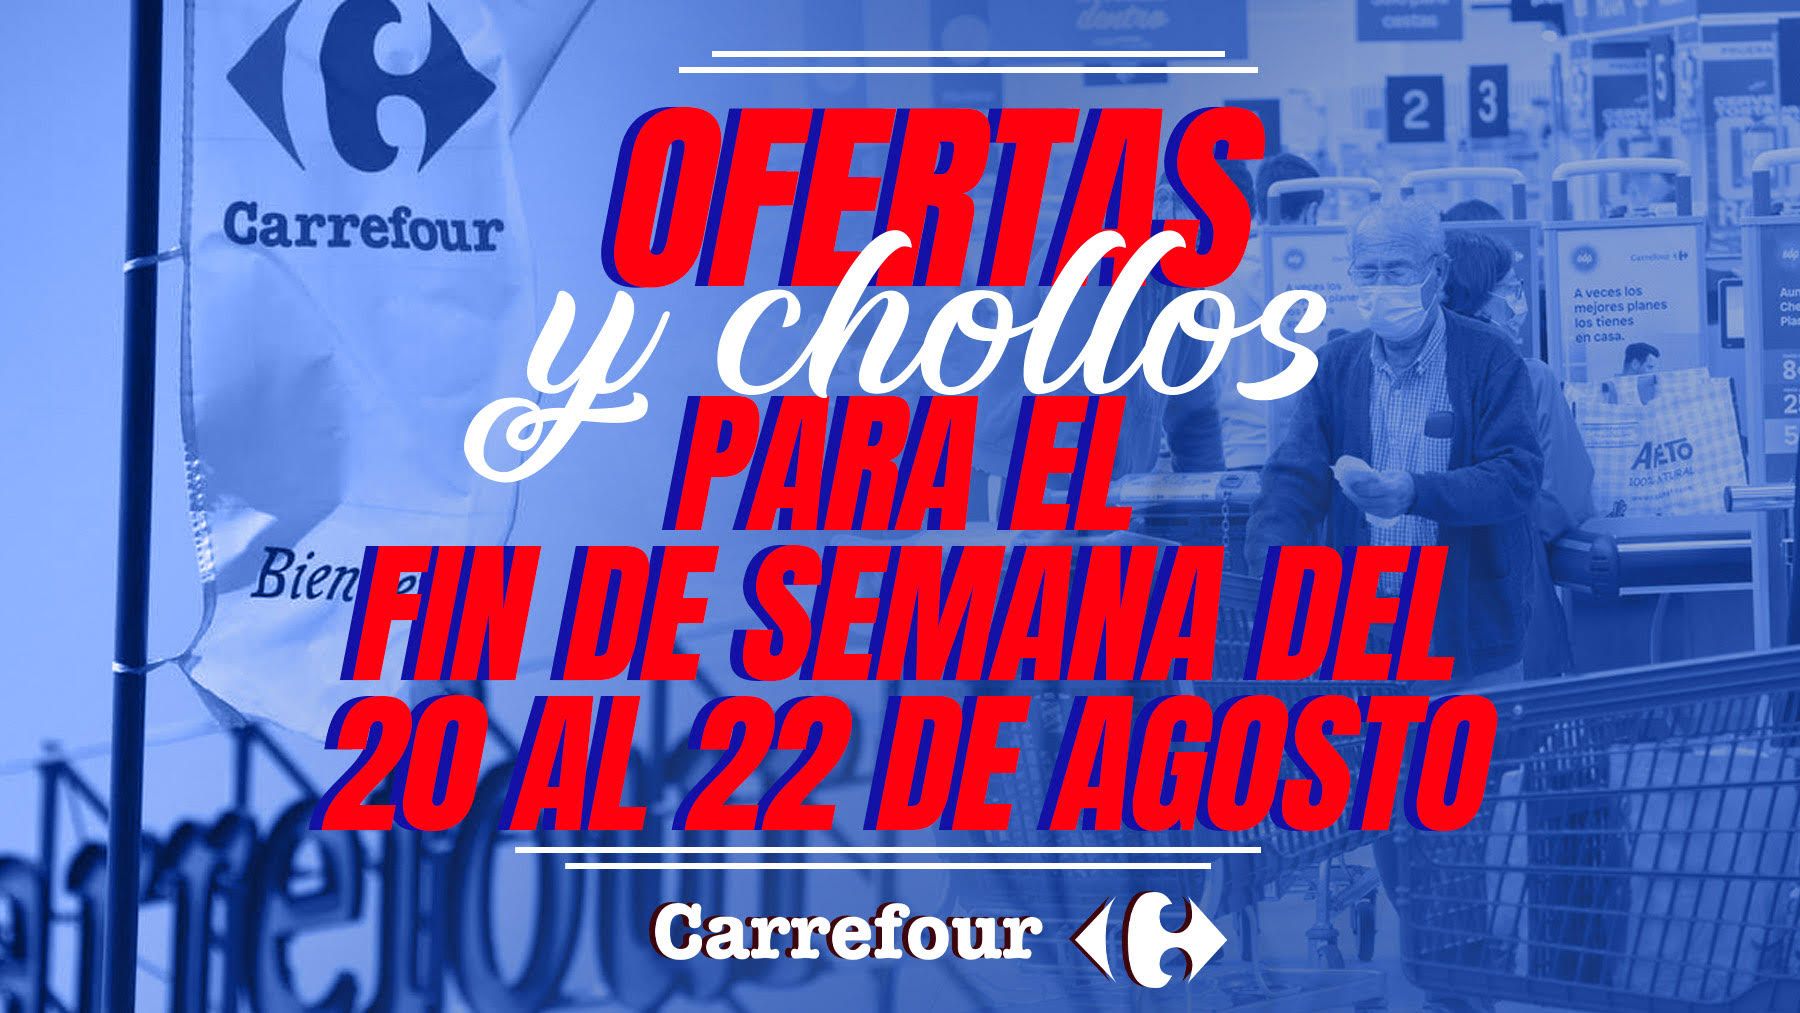 Descubre las mejores ofertas Carrefour para el fin de semana del 20 al 22 de agosto